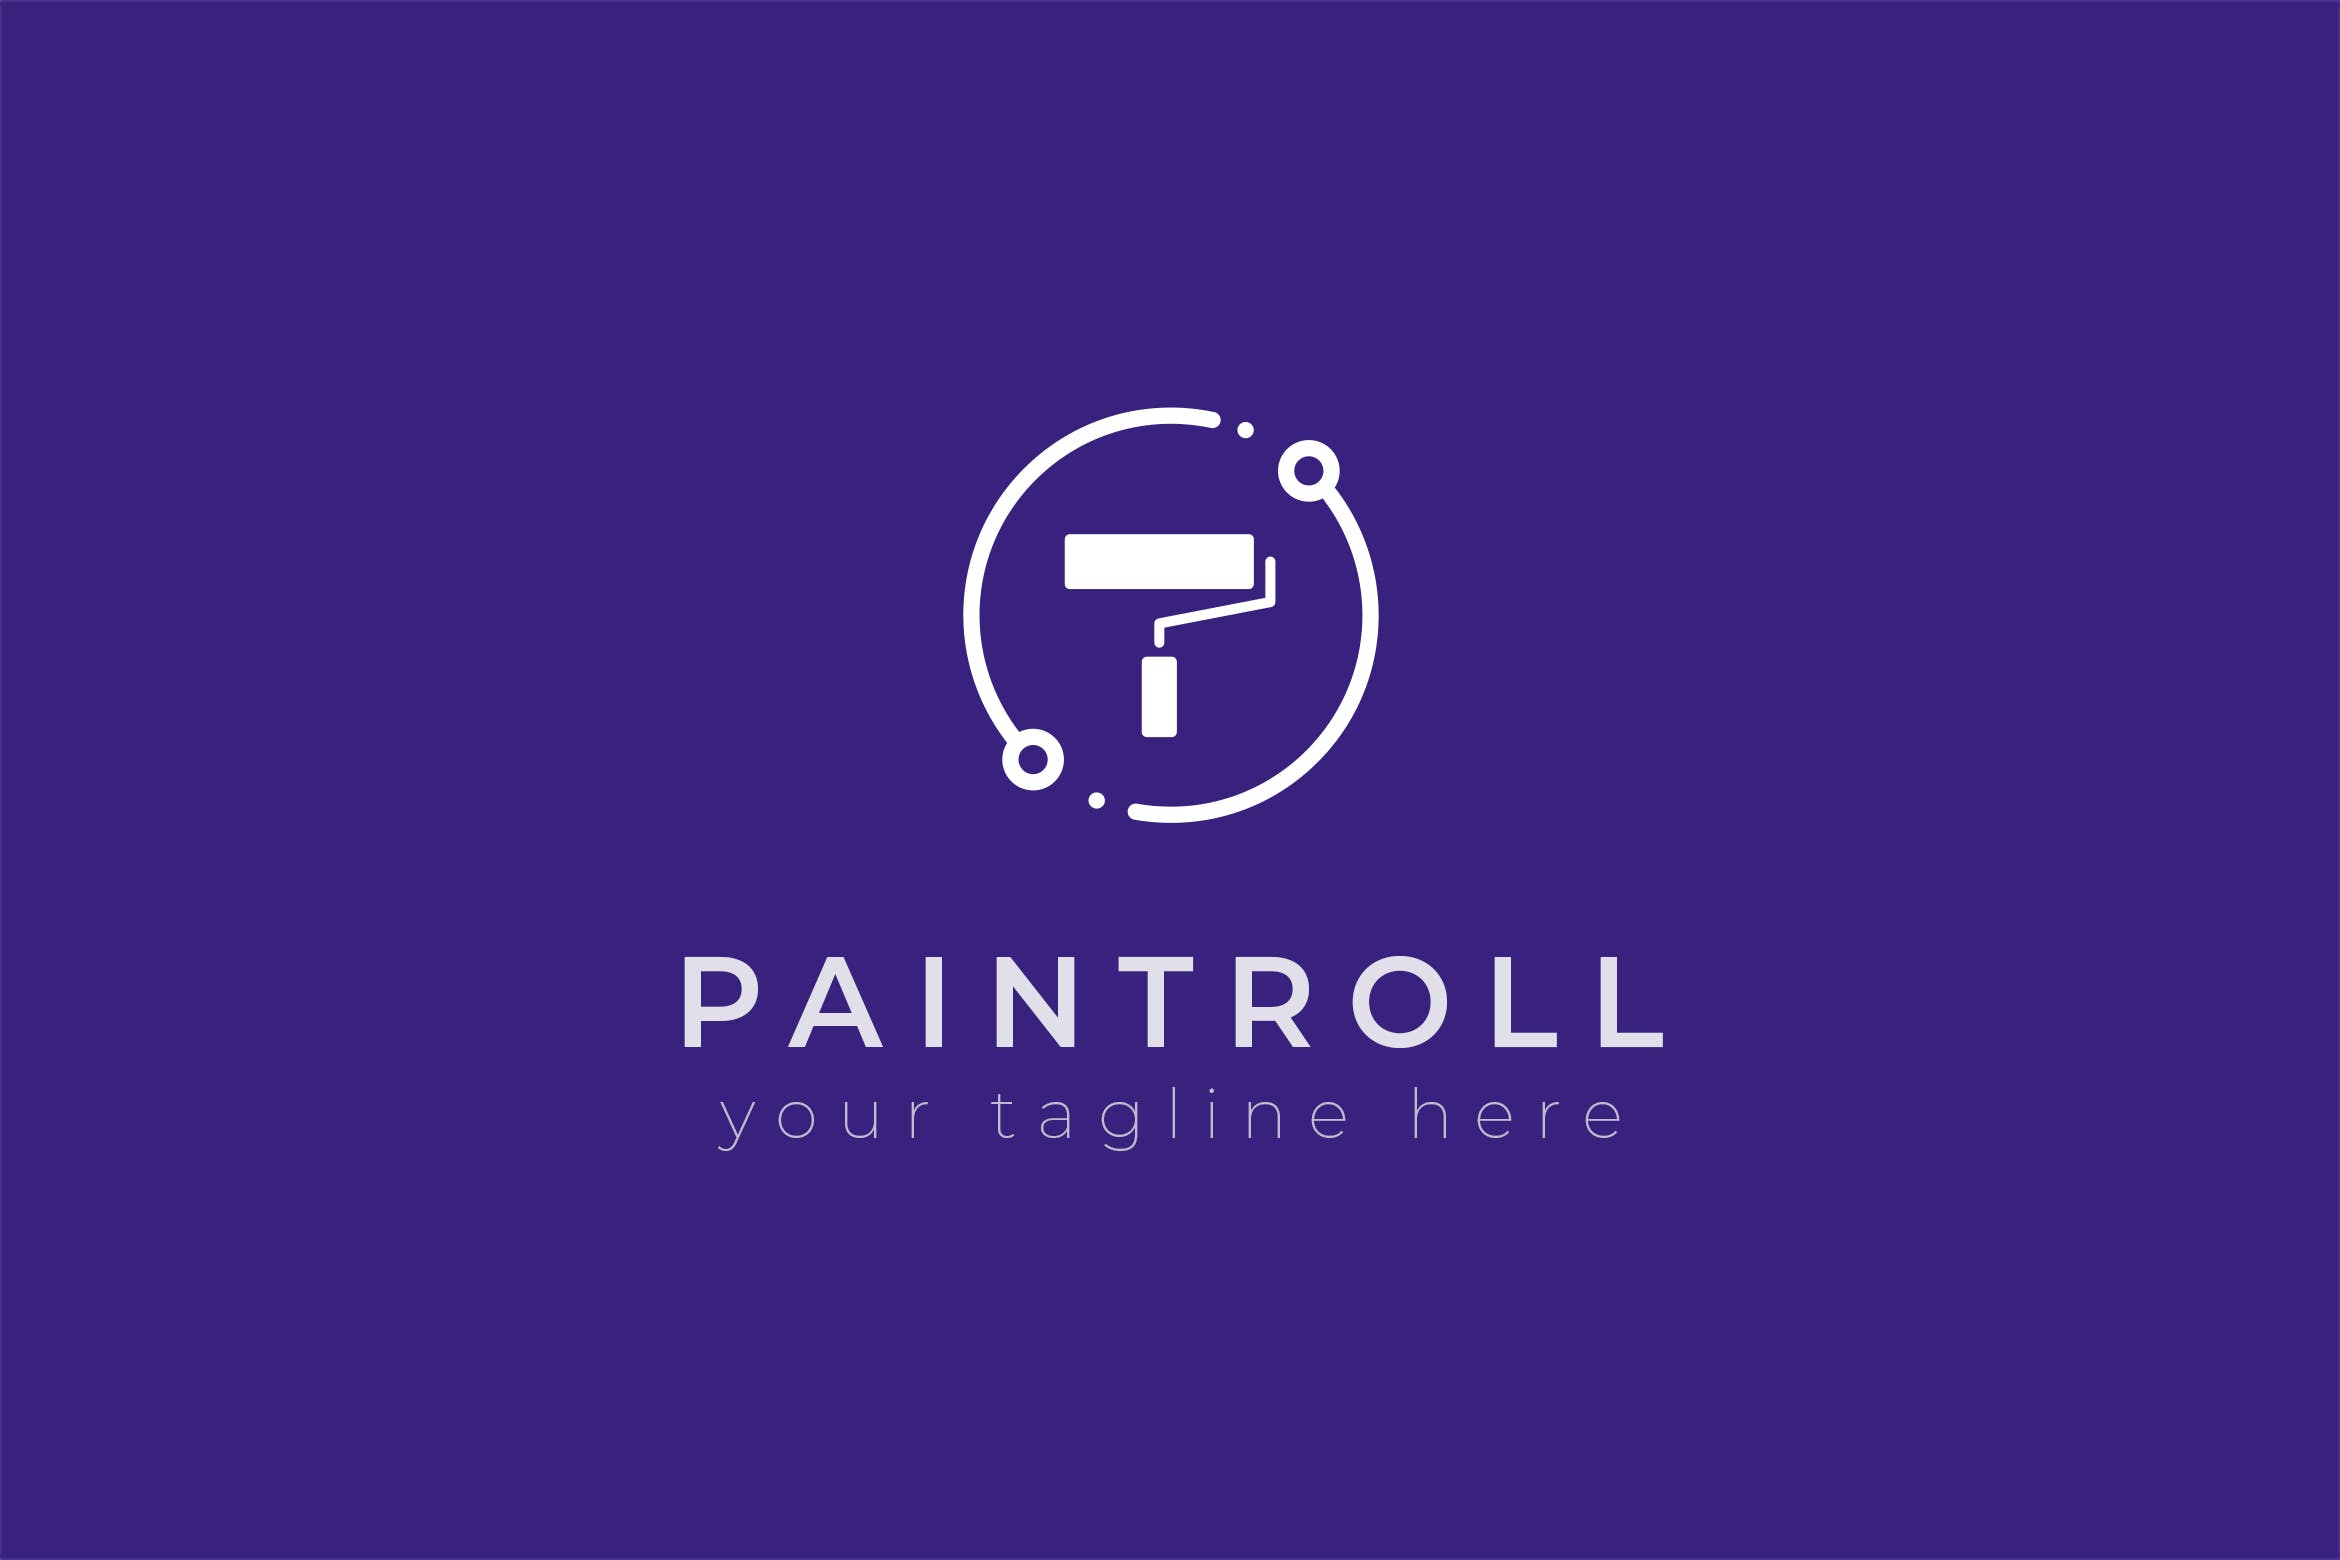 油漆品牌油漆滚刷图形Logo设计蚂蚁素材精选模板 Paintroll – Premium Logo Template插图